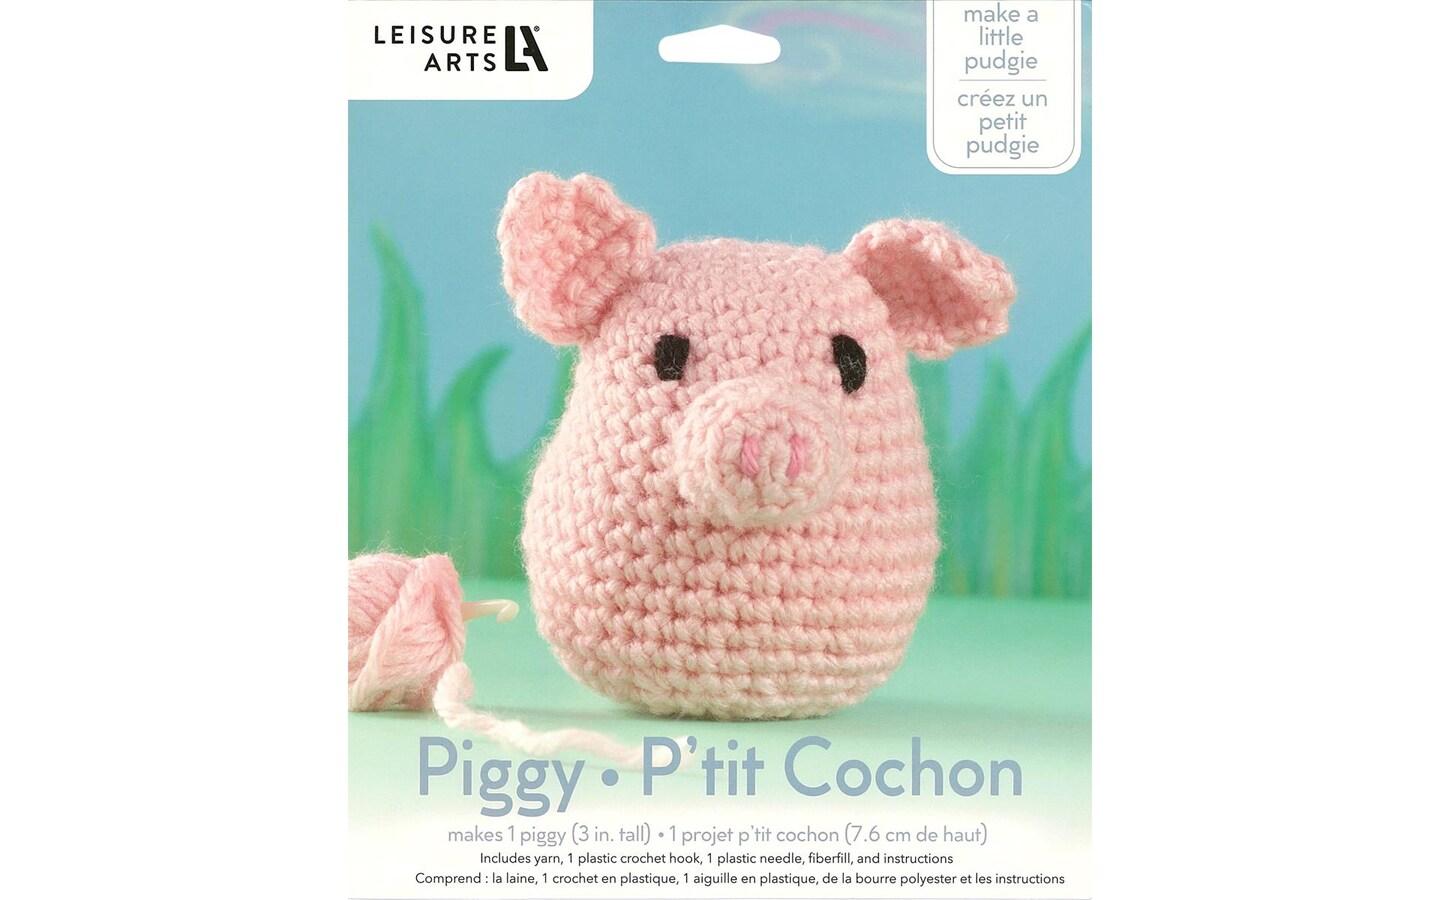 Buy BEGINNER CROCHET KIT Amigurumi Cow, Easy Starter Crochet Kit